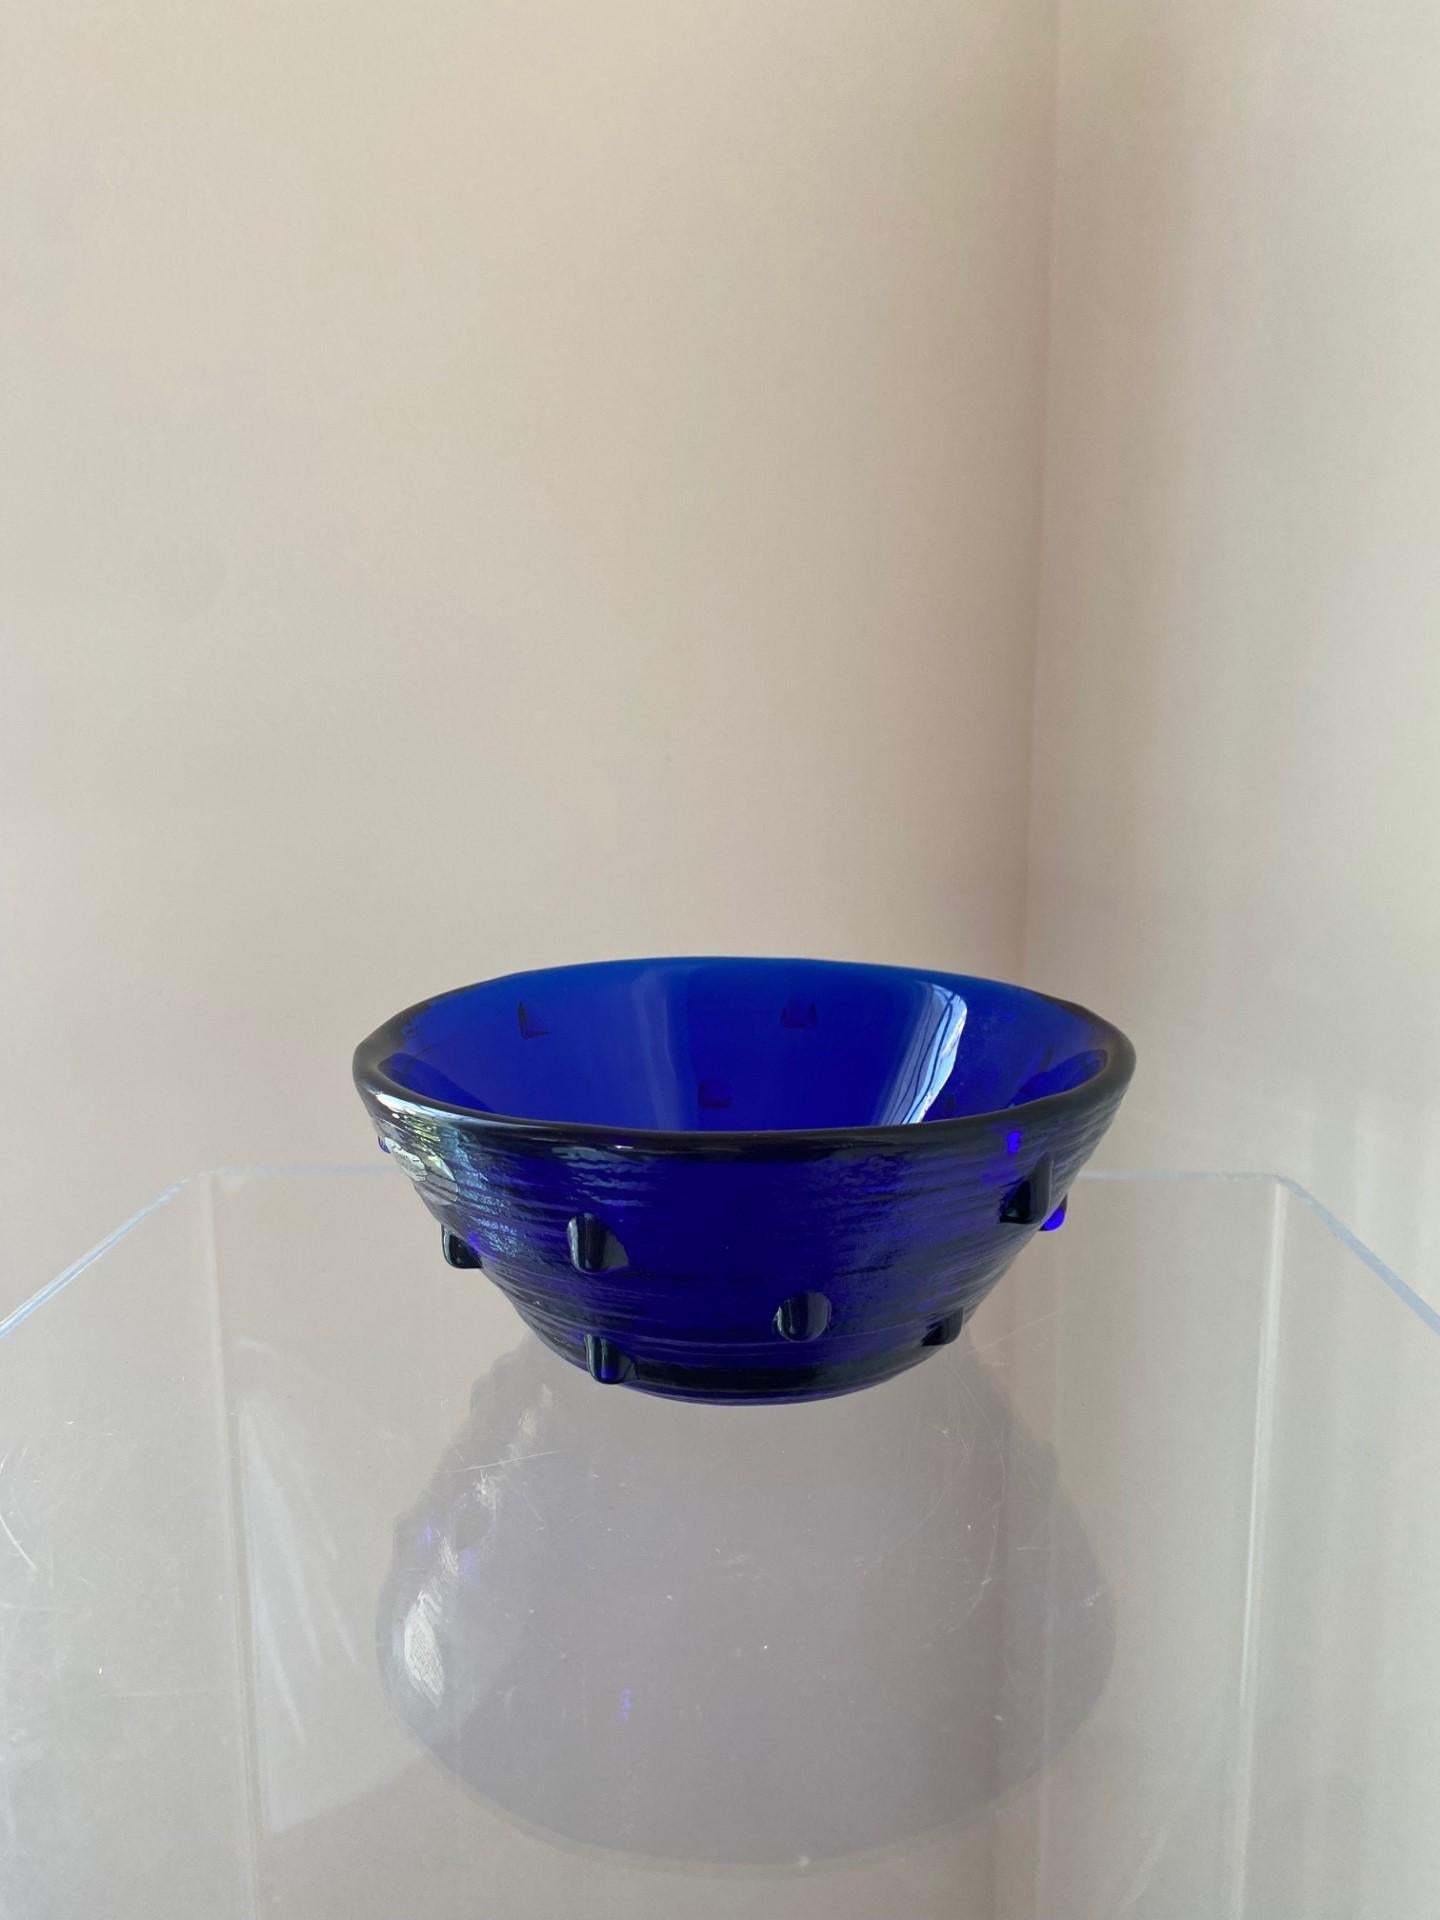 Schöne mundgeblasene Glasschale von Benklo.  Dieses schöne Stück ist signiert und stellt die Schönheit und das Leuchten von kobaltblauem mundgeblasenem Glas und Textur dar.  Das schlichte Profil des Stücks wird durch ein Nietenmotiv aufgewertet, was